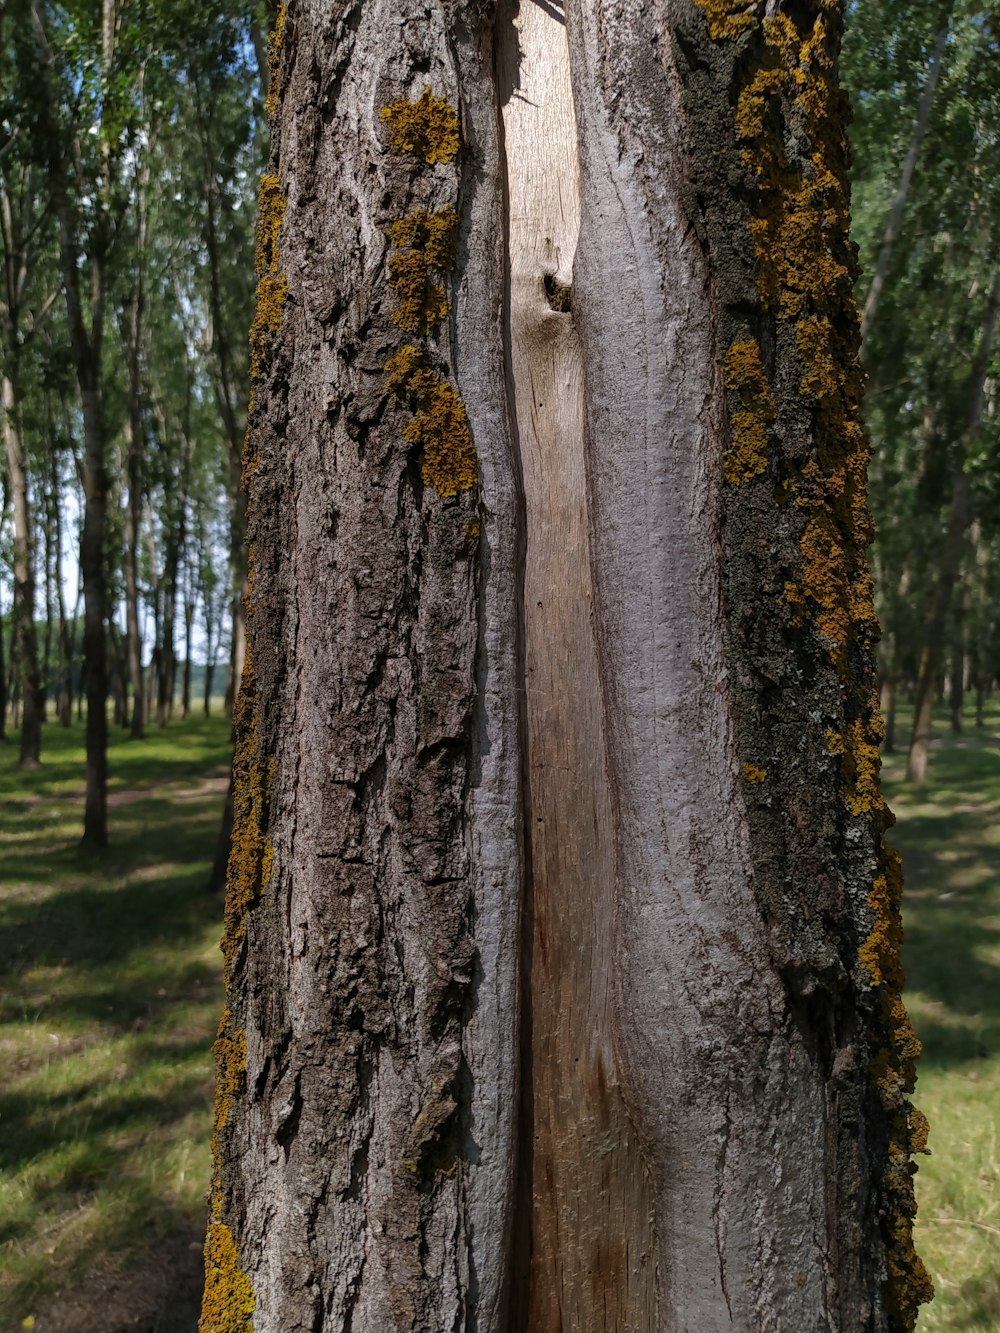 Tronco de árbol marrón cerca del cuerpo de agua durante el día